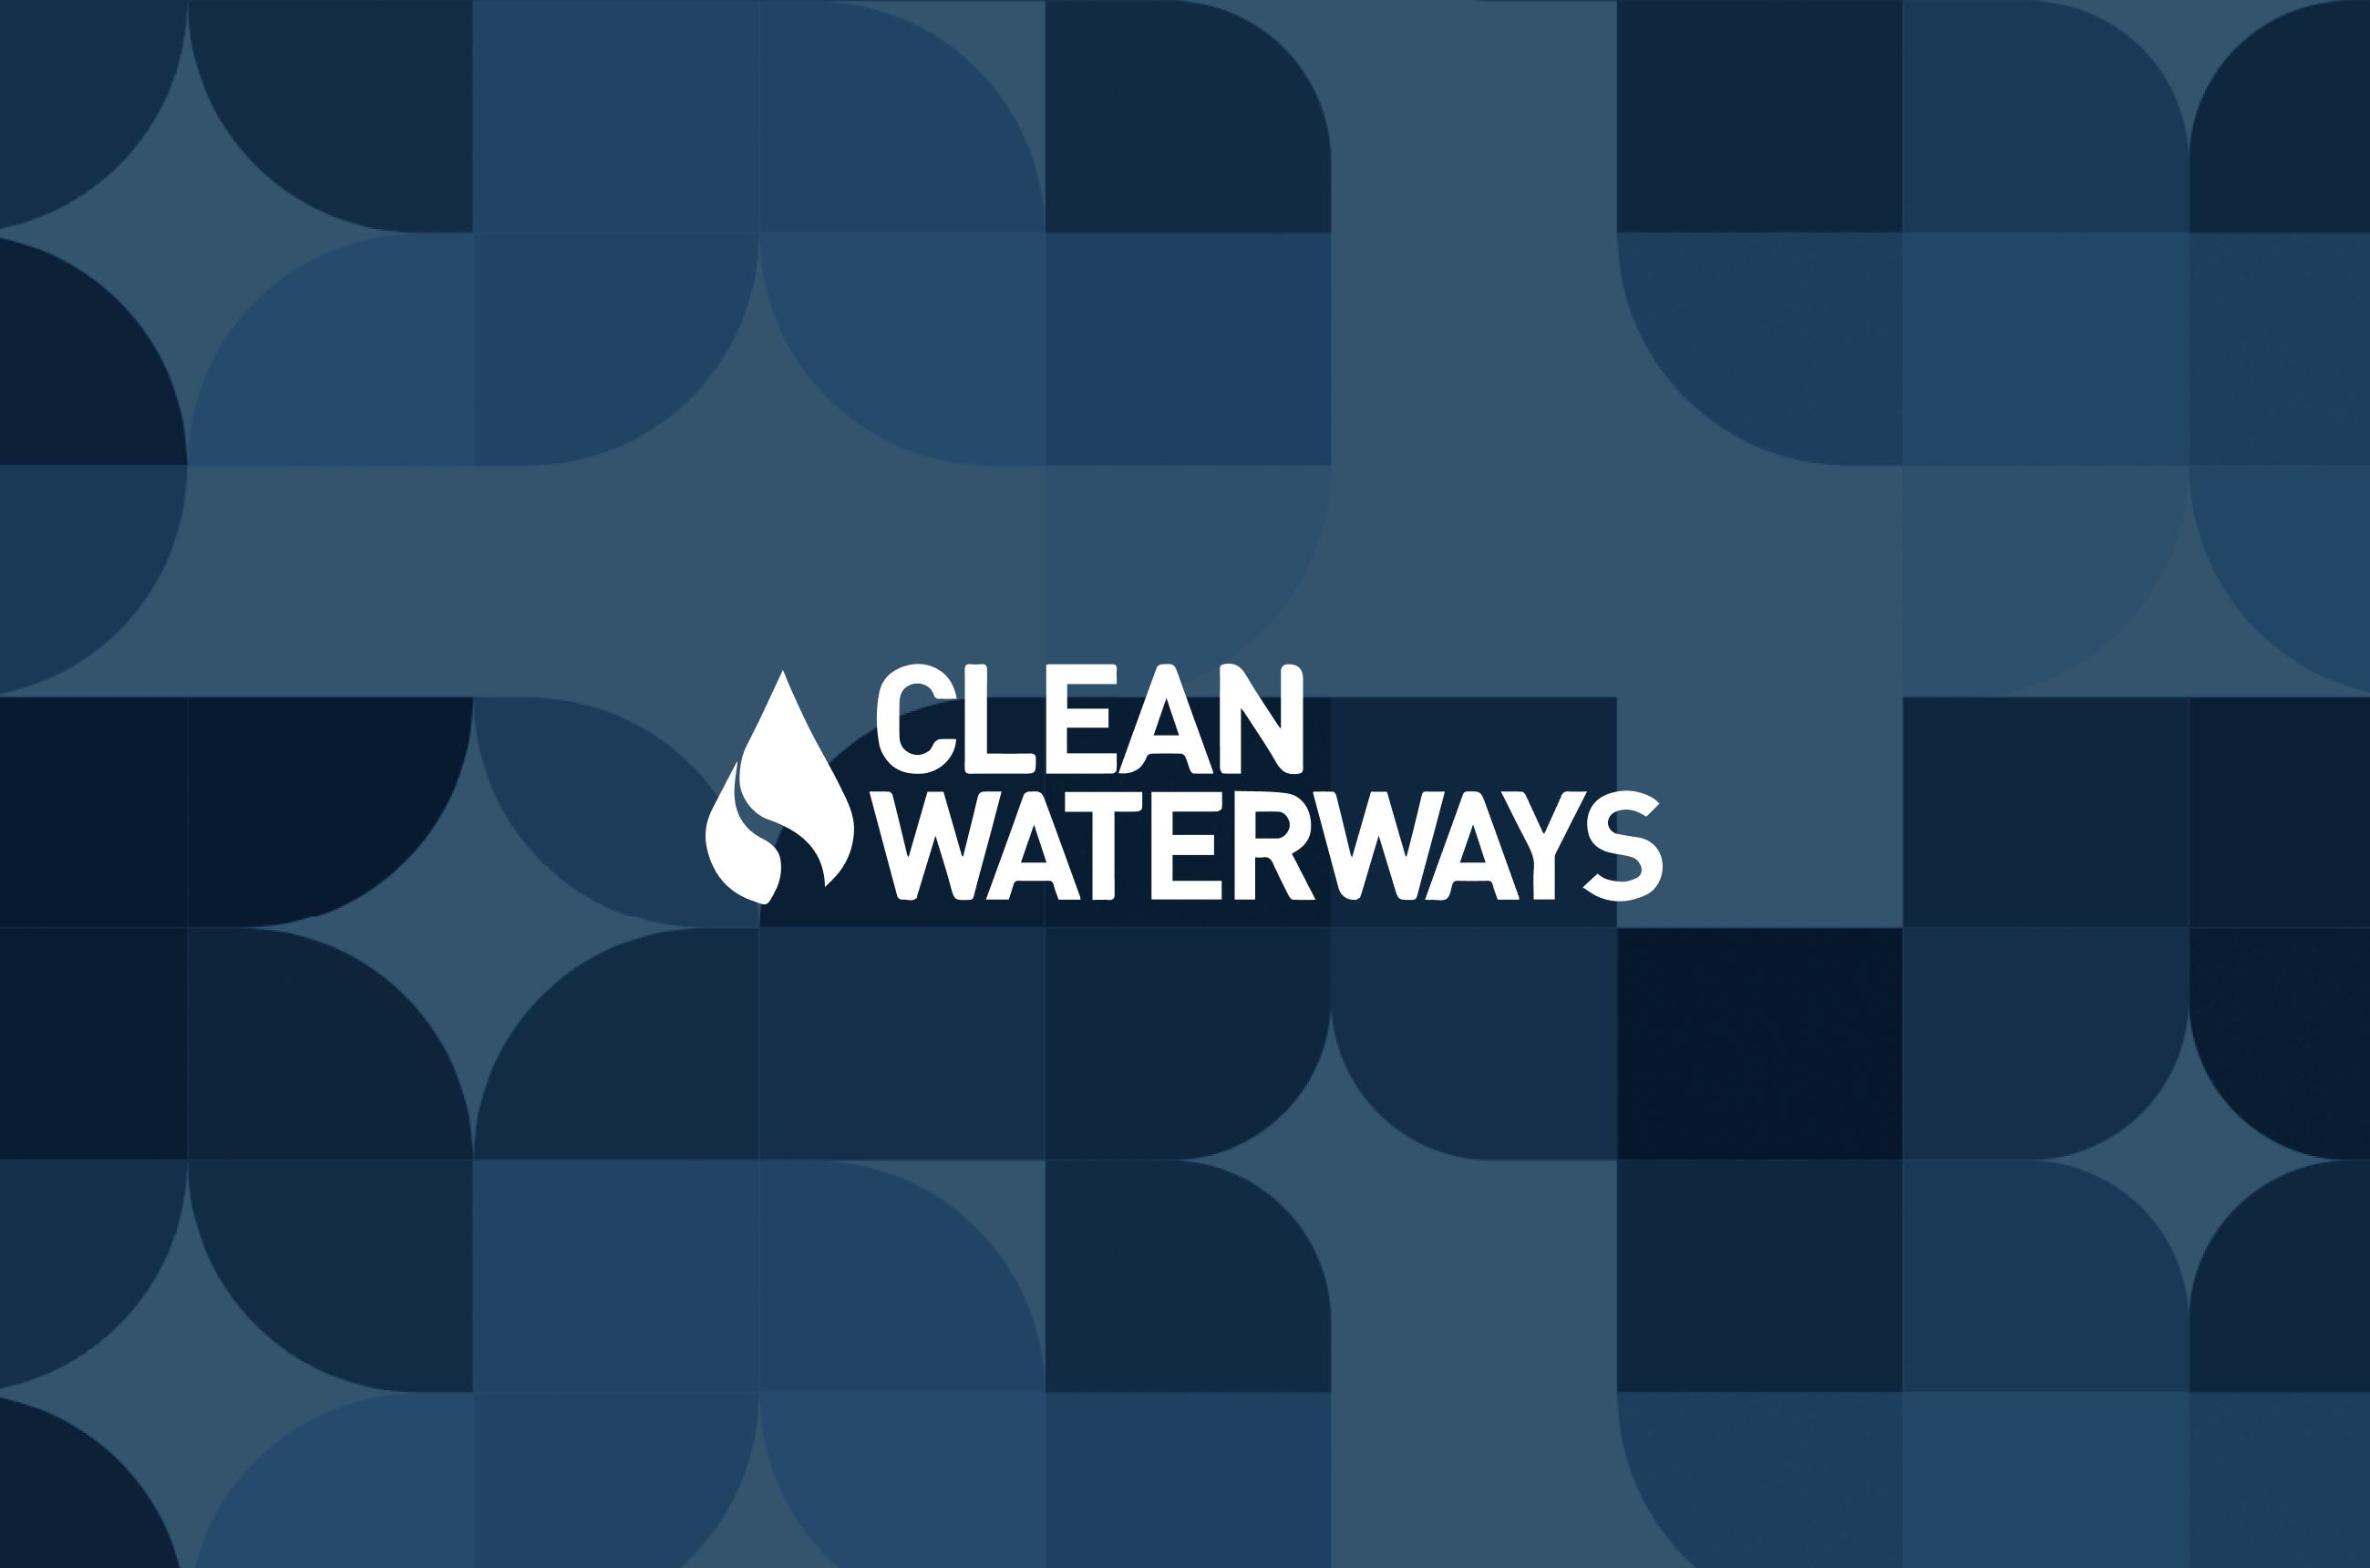 Clean waterways